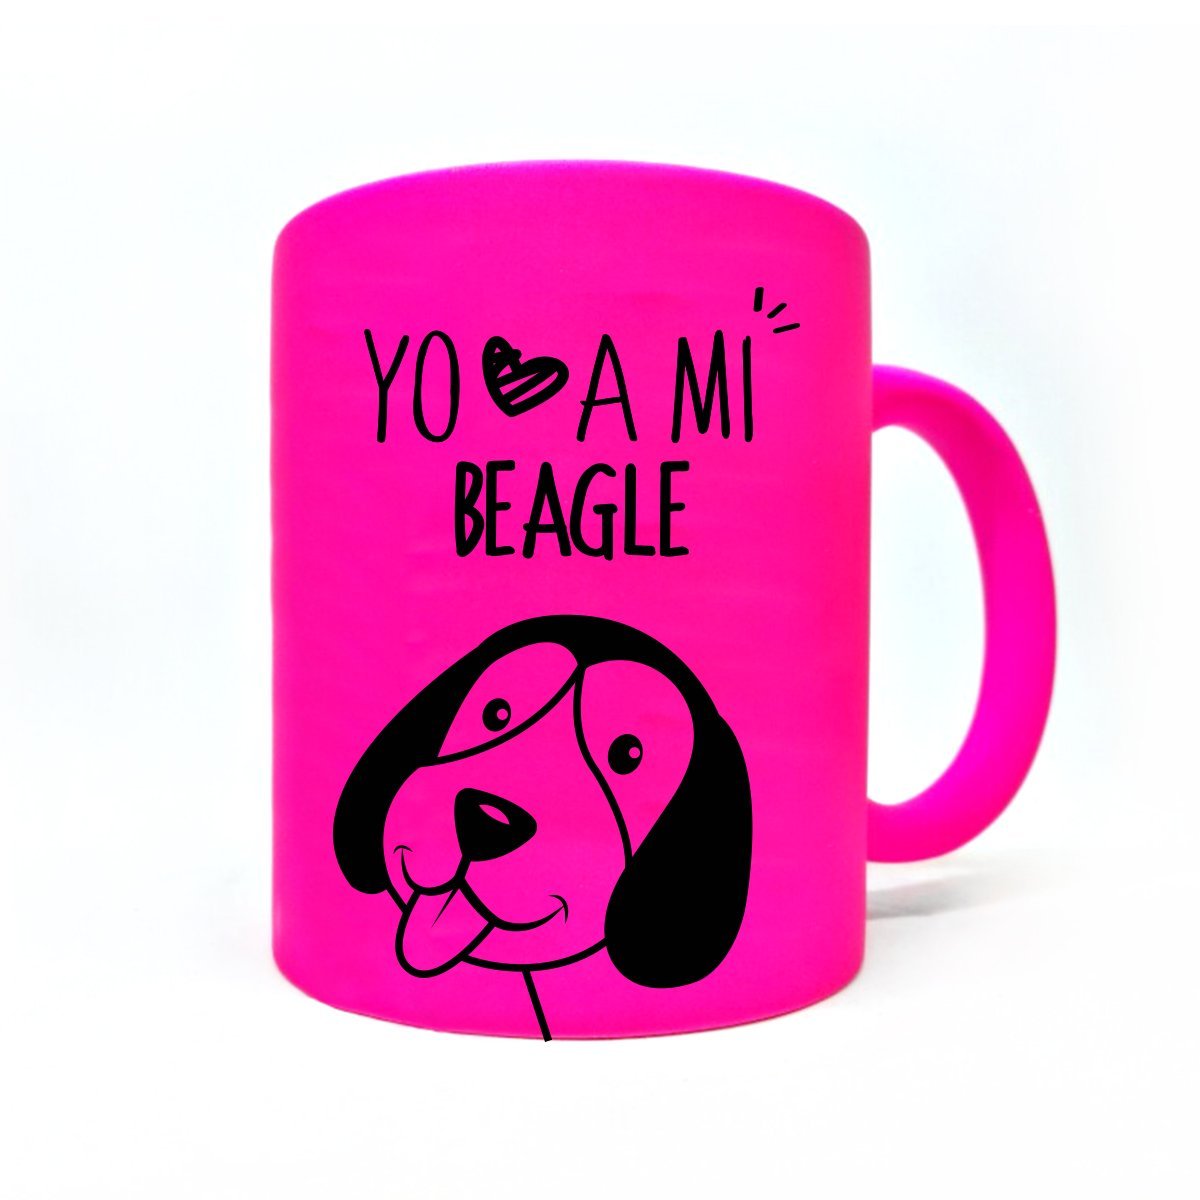 Tazón Color Beagle Tienda Petfy Rosado